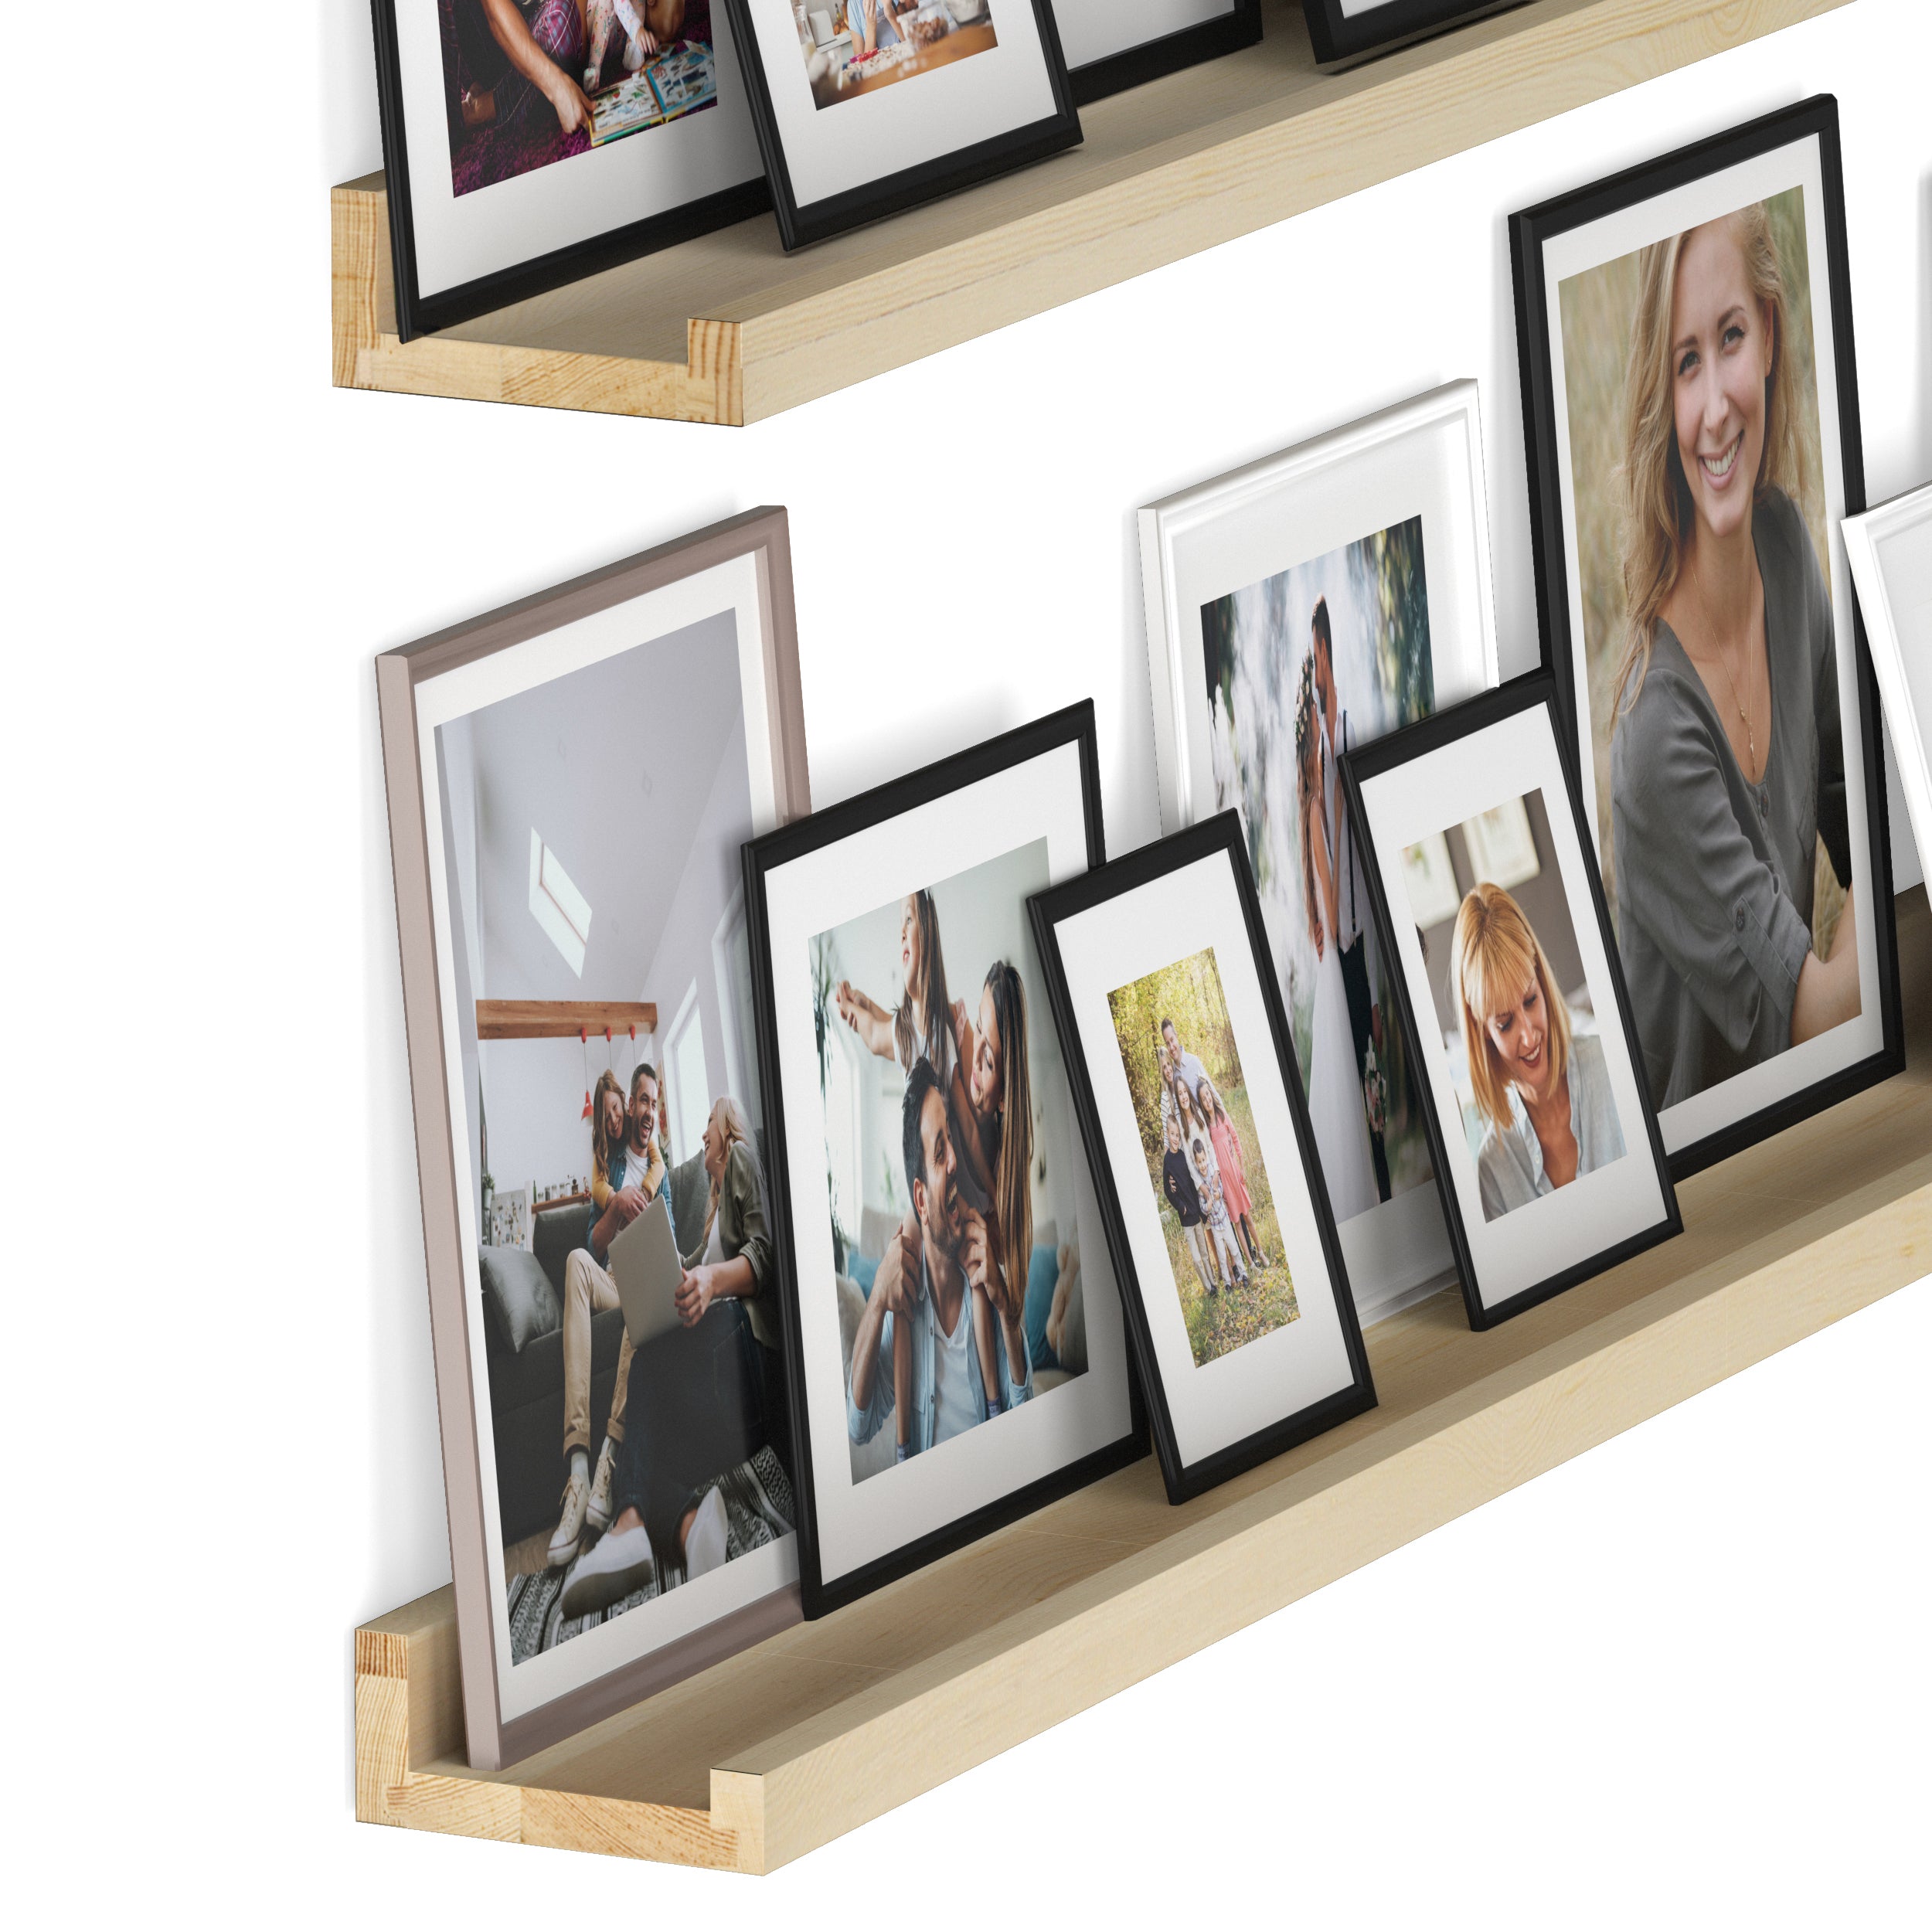 DENVER Floating Shelves and Picture Ledge for Living Room Decor – 36” x 3.6" – Set of 2 – Natural - Wallniture